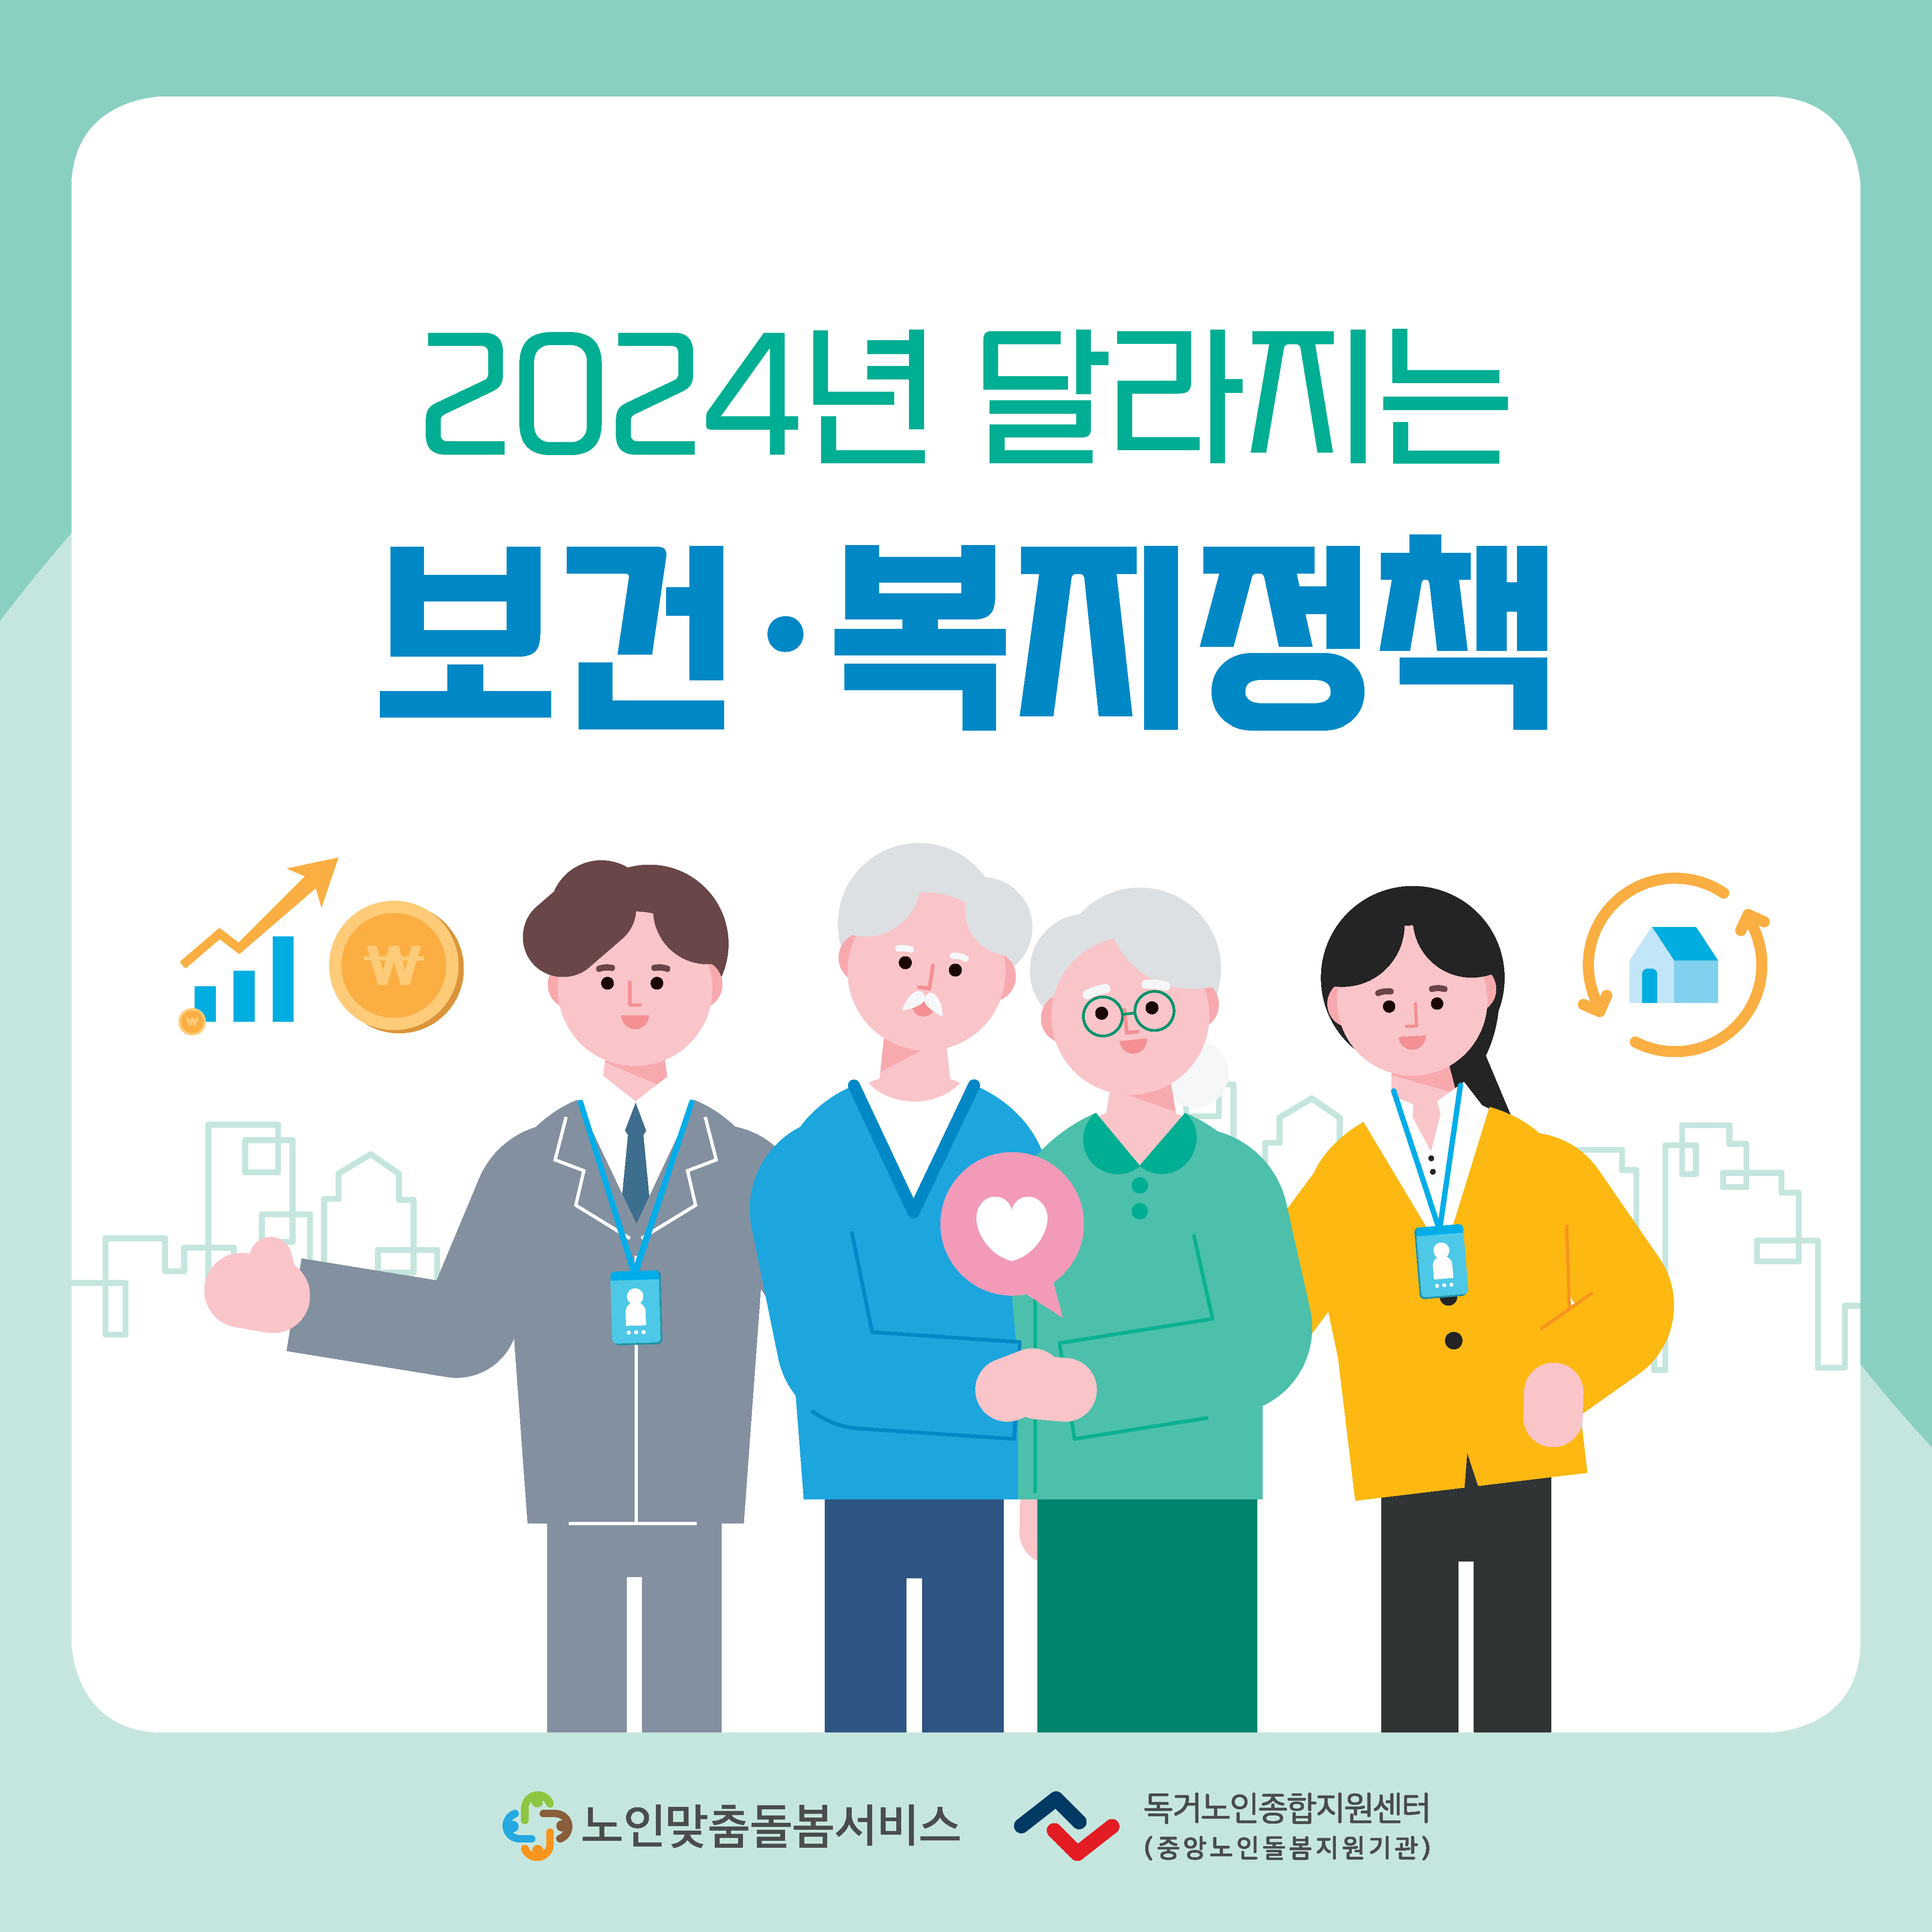 노인맞춤돌봄서비스 종사자를 위한 2024년 2월 카드뉴스 제공 안내(2024년 달라지는 보건복지정책)